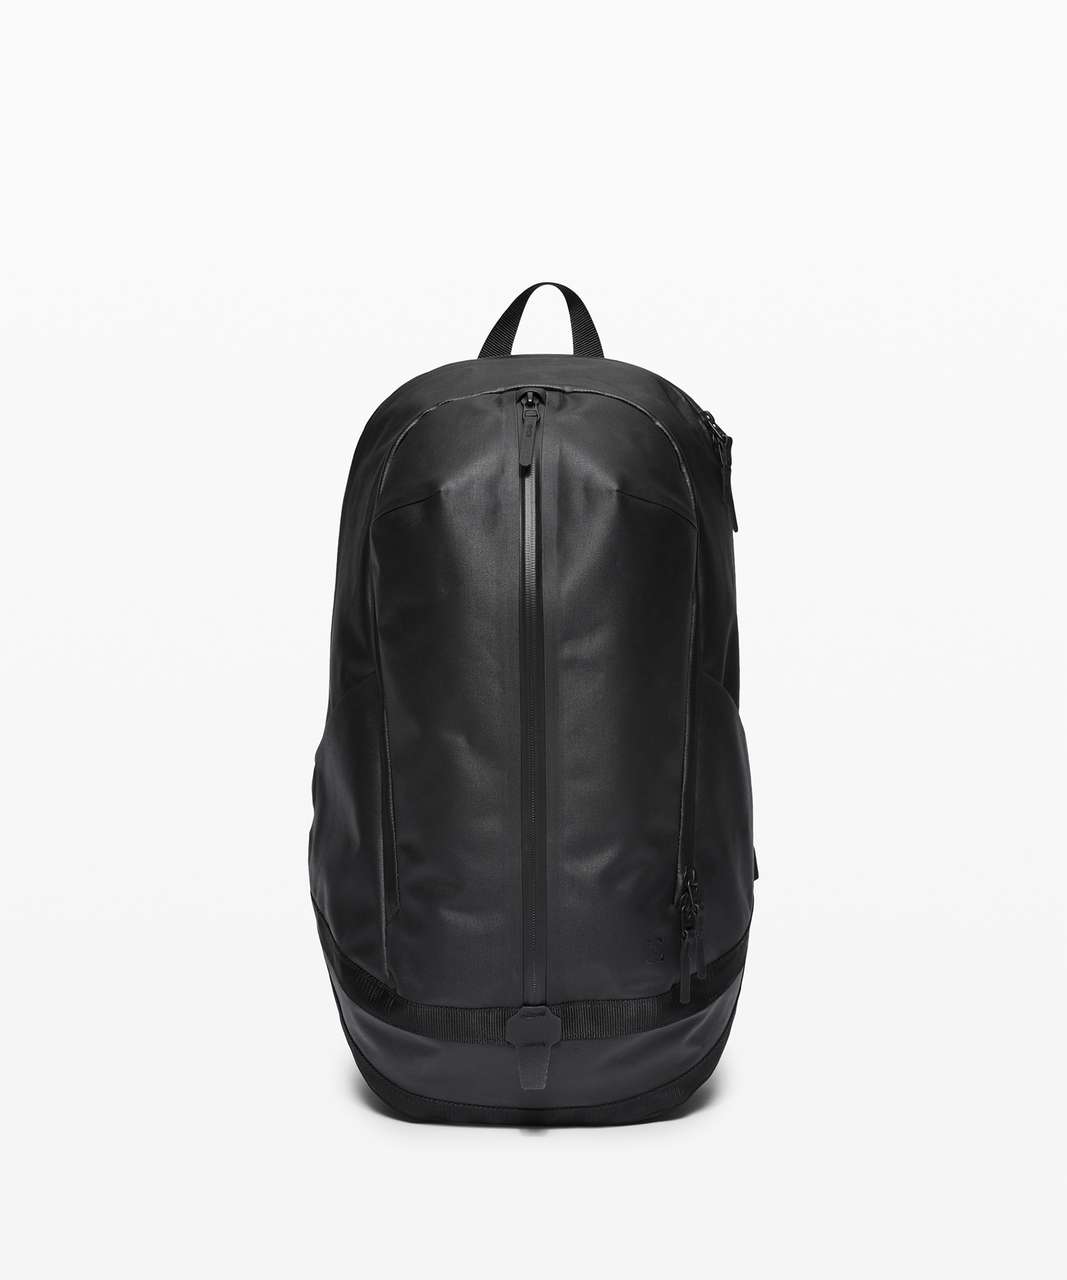 Lululemon First Line Backpack - Black